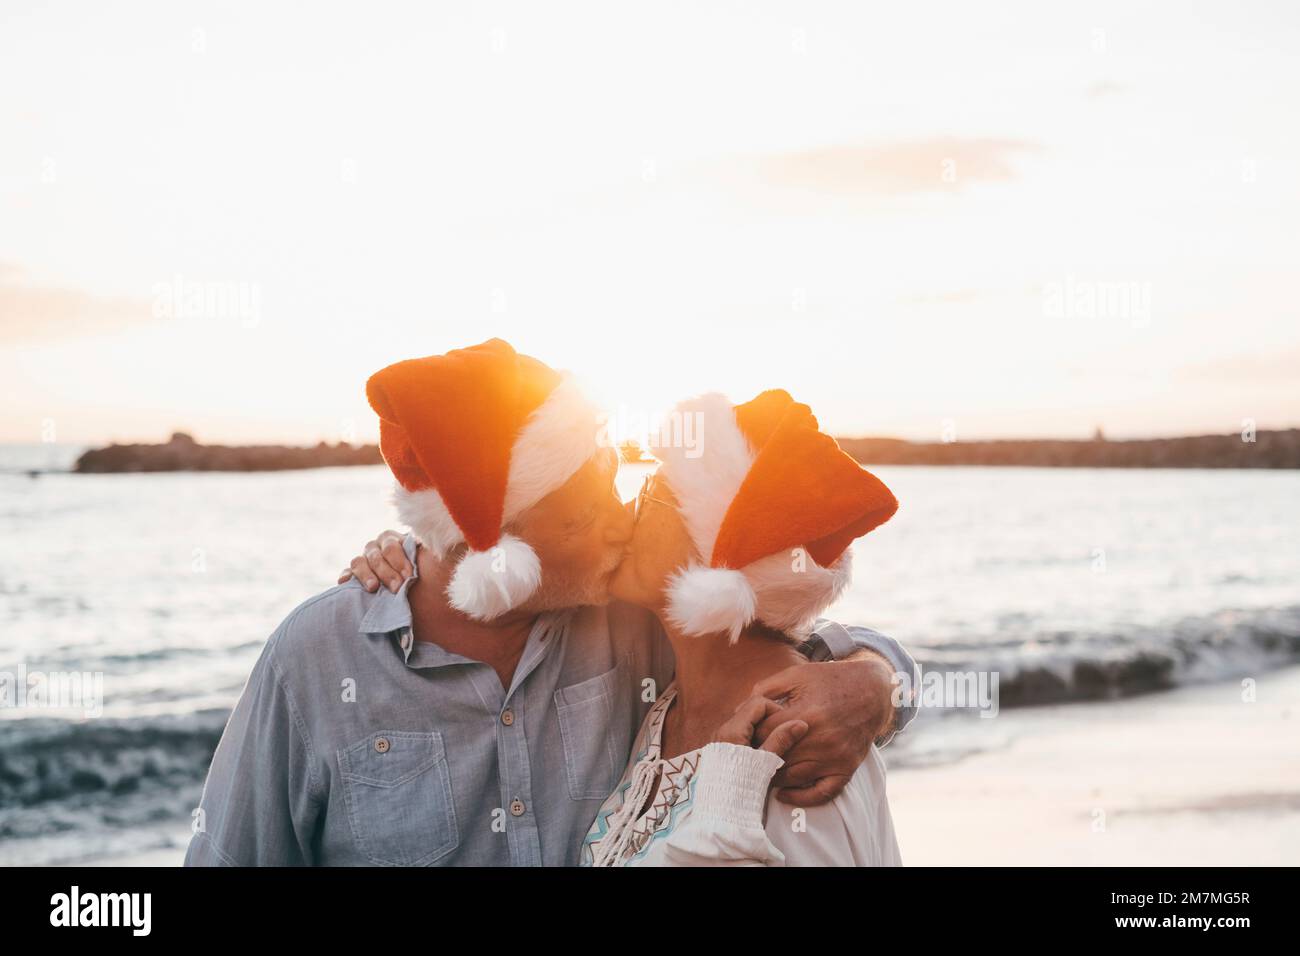 Ein altes, süßes Paar reifer Leute, die sich am Strand amüsieren und Spaß miteinander haben und an Feiertagen Weihnachtshüte tragen. Umarmt am Strand mit dem Sonnenuntergang im Hintergrund im Winter. Stockfoto